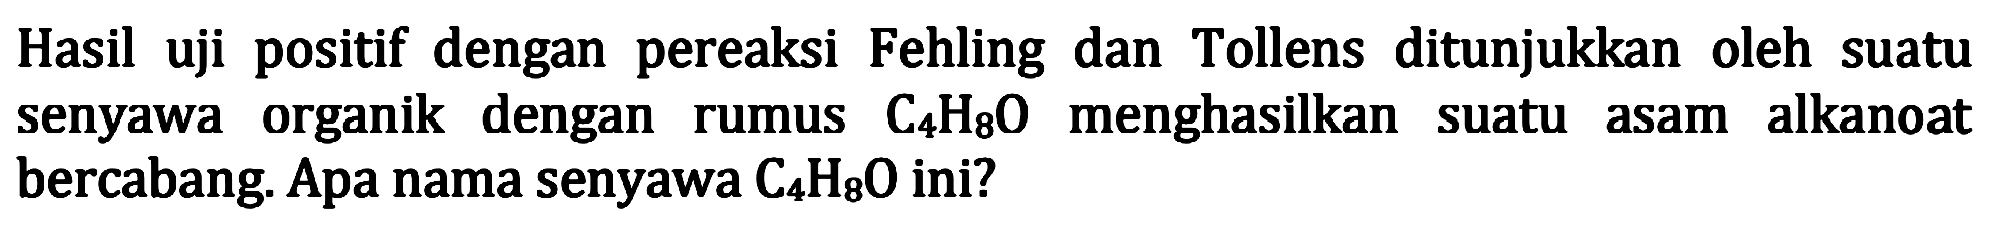 Hasil uji positif dengan pereaksi Fehling dan Tollens ditunjukkan oleh suatu senyawa organik dengan rumus  C4 H8 O  menghasilkan suatu asam alkanoat bercabang. Apa nama senyawa  C4 H8 O  ini?